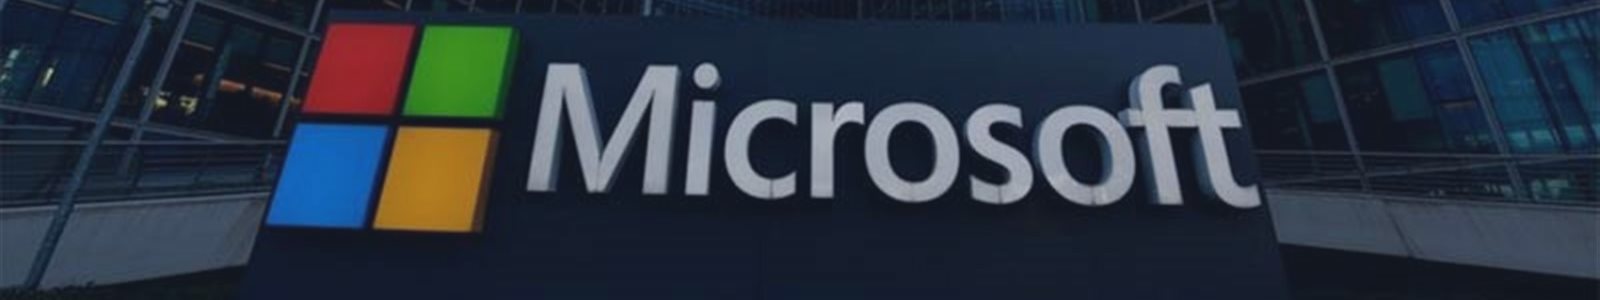 Аналитики не рекомендуют продавать акции Microsoft